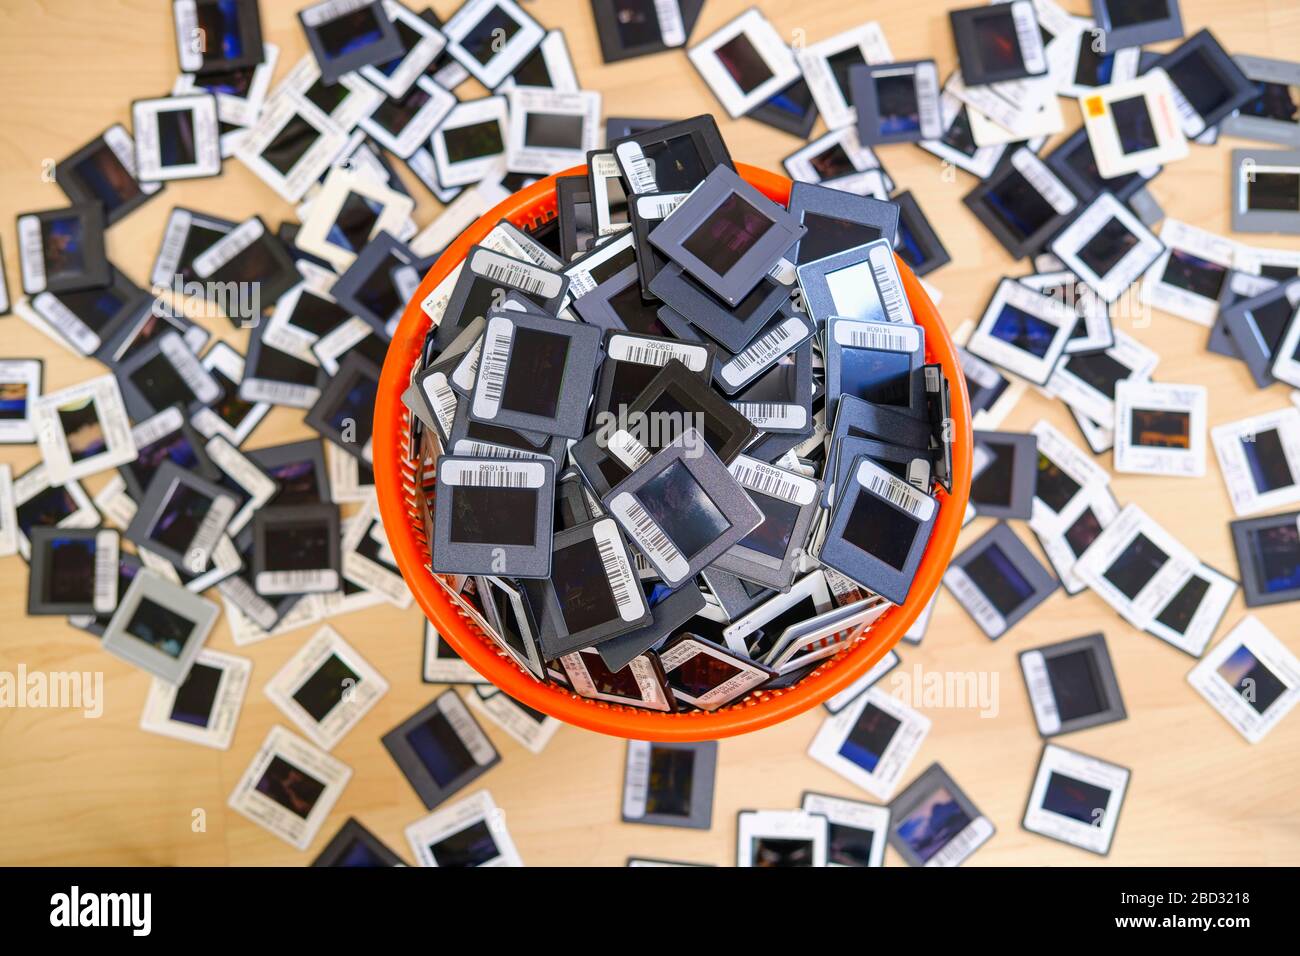 Diapositives 35 mm encadrées dans le panier de papier inutile débordant et sur le sol, diapositives, Allemagne Banque D'Images